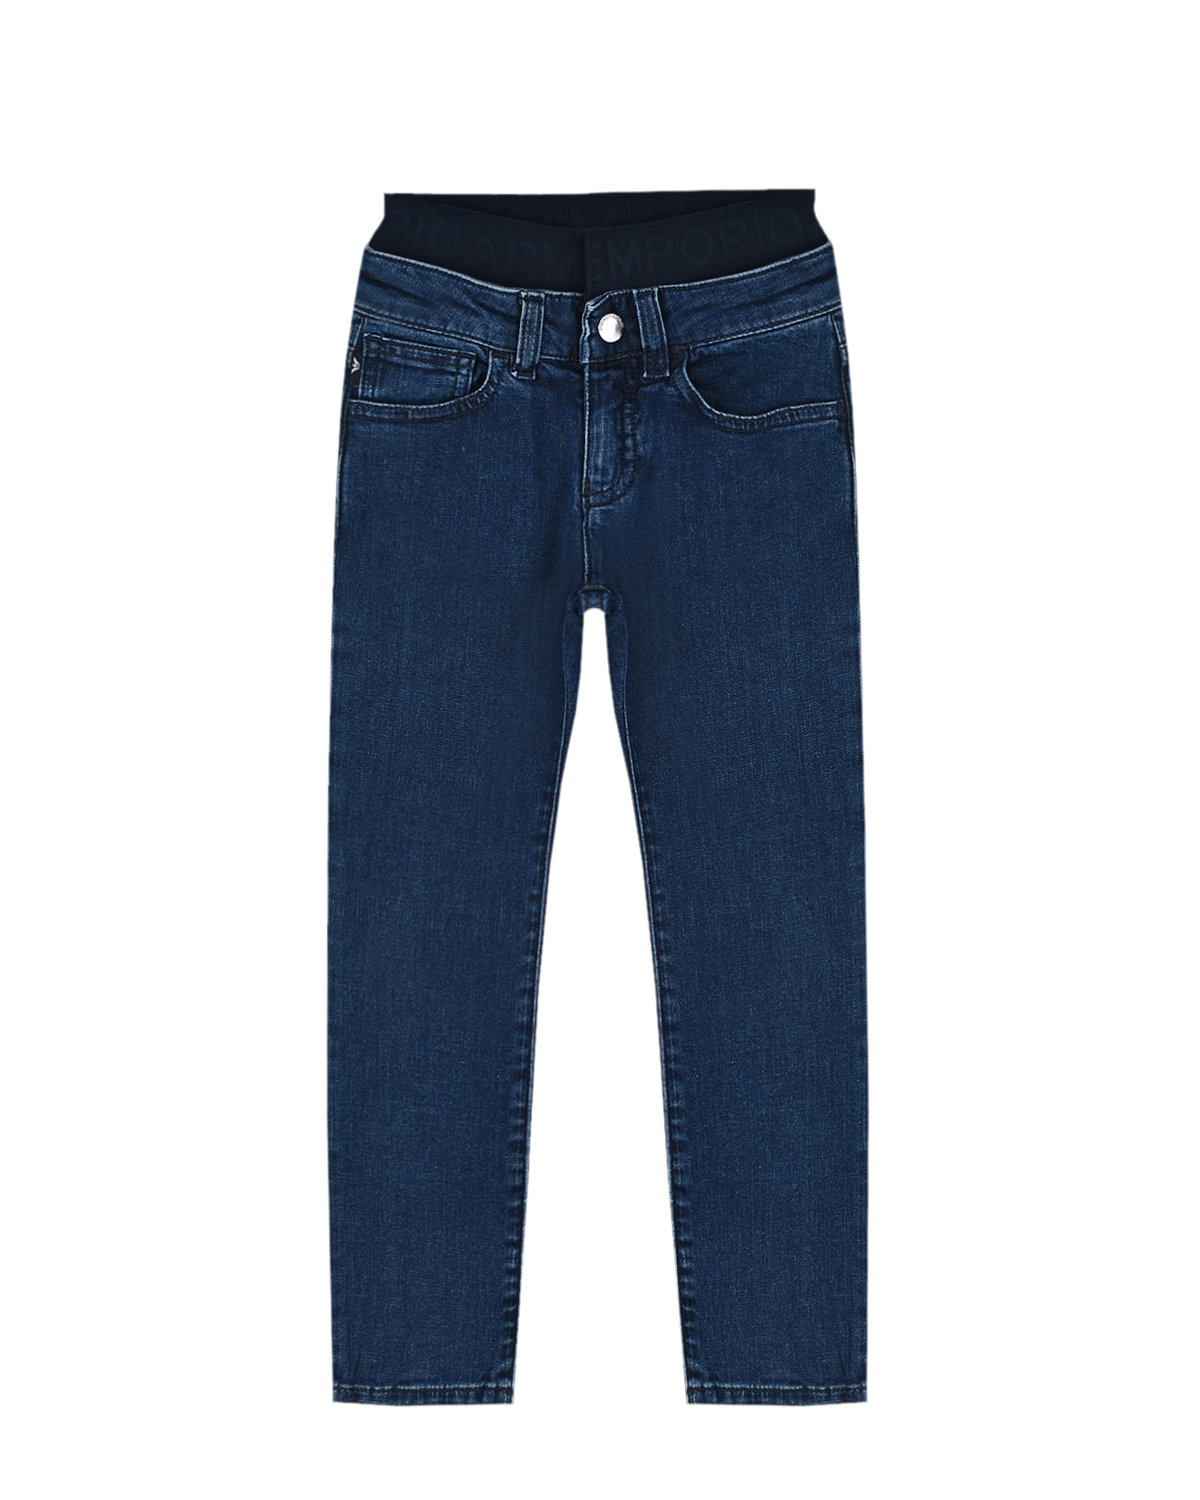 Синие джинсы с поясом на резинке Emporio Armani детские